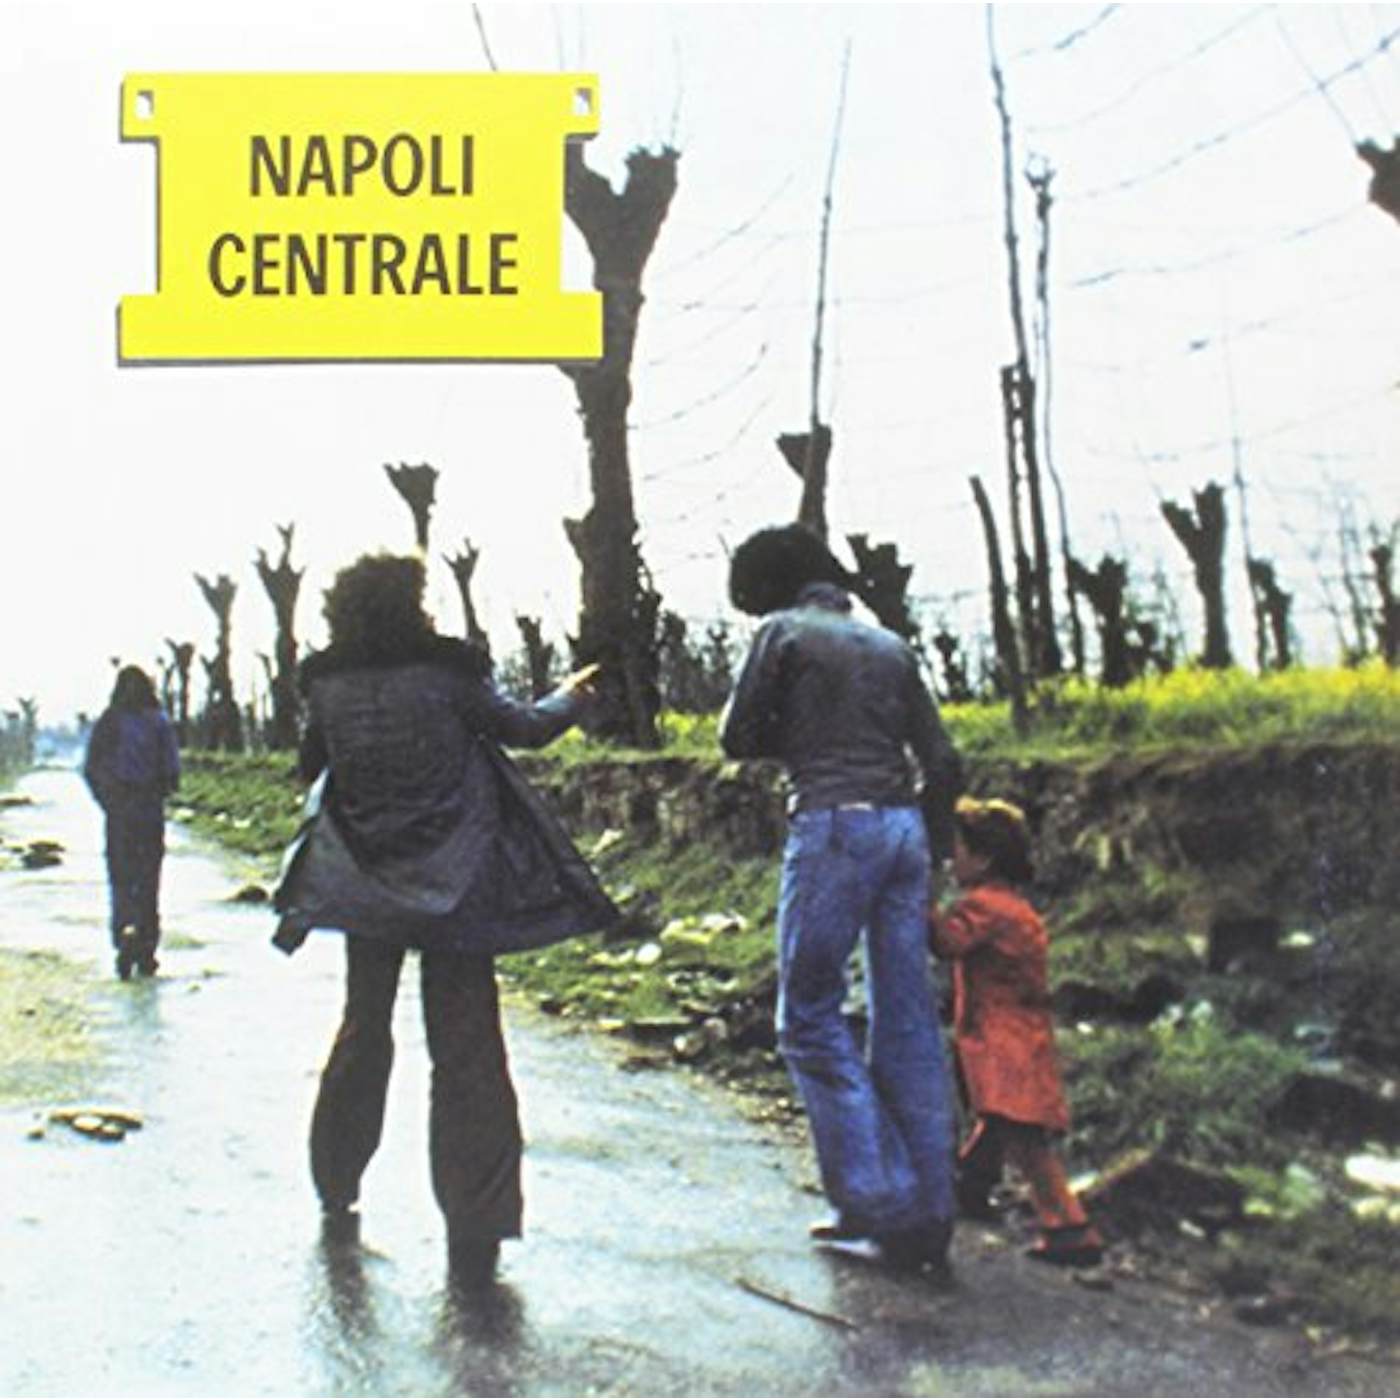 Napoli Centrale Vinyl Record